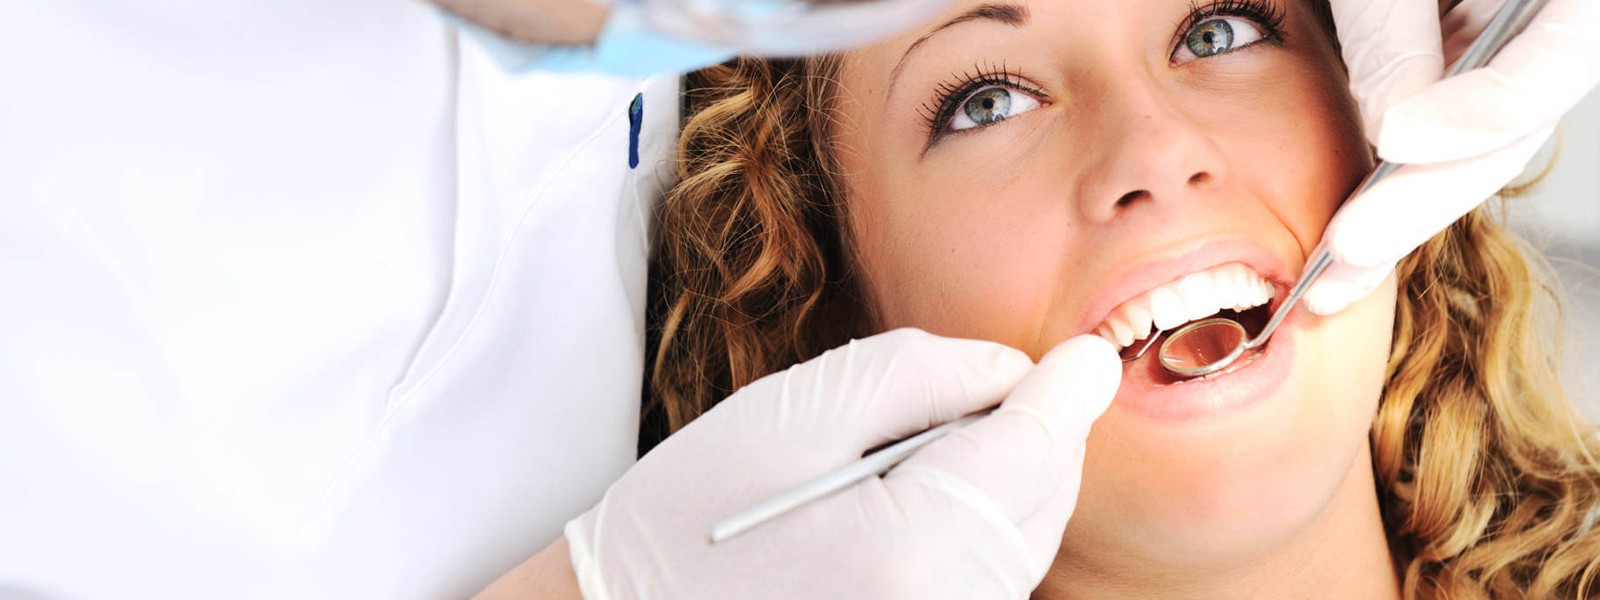 Tavernese Medi Odonto Center mette a disposizione una vasta gamma di servizi medici-odontoiatriciApprofondisci